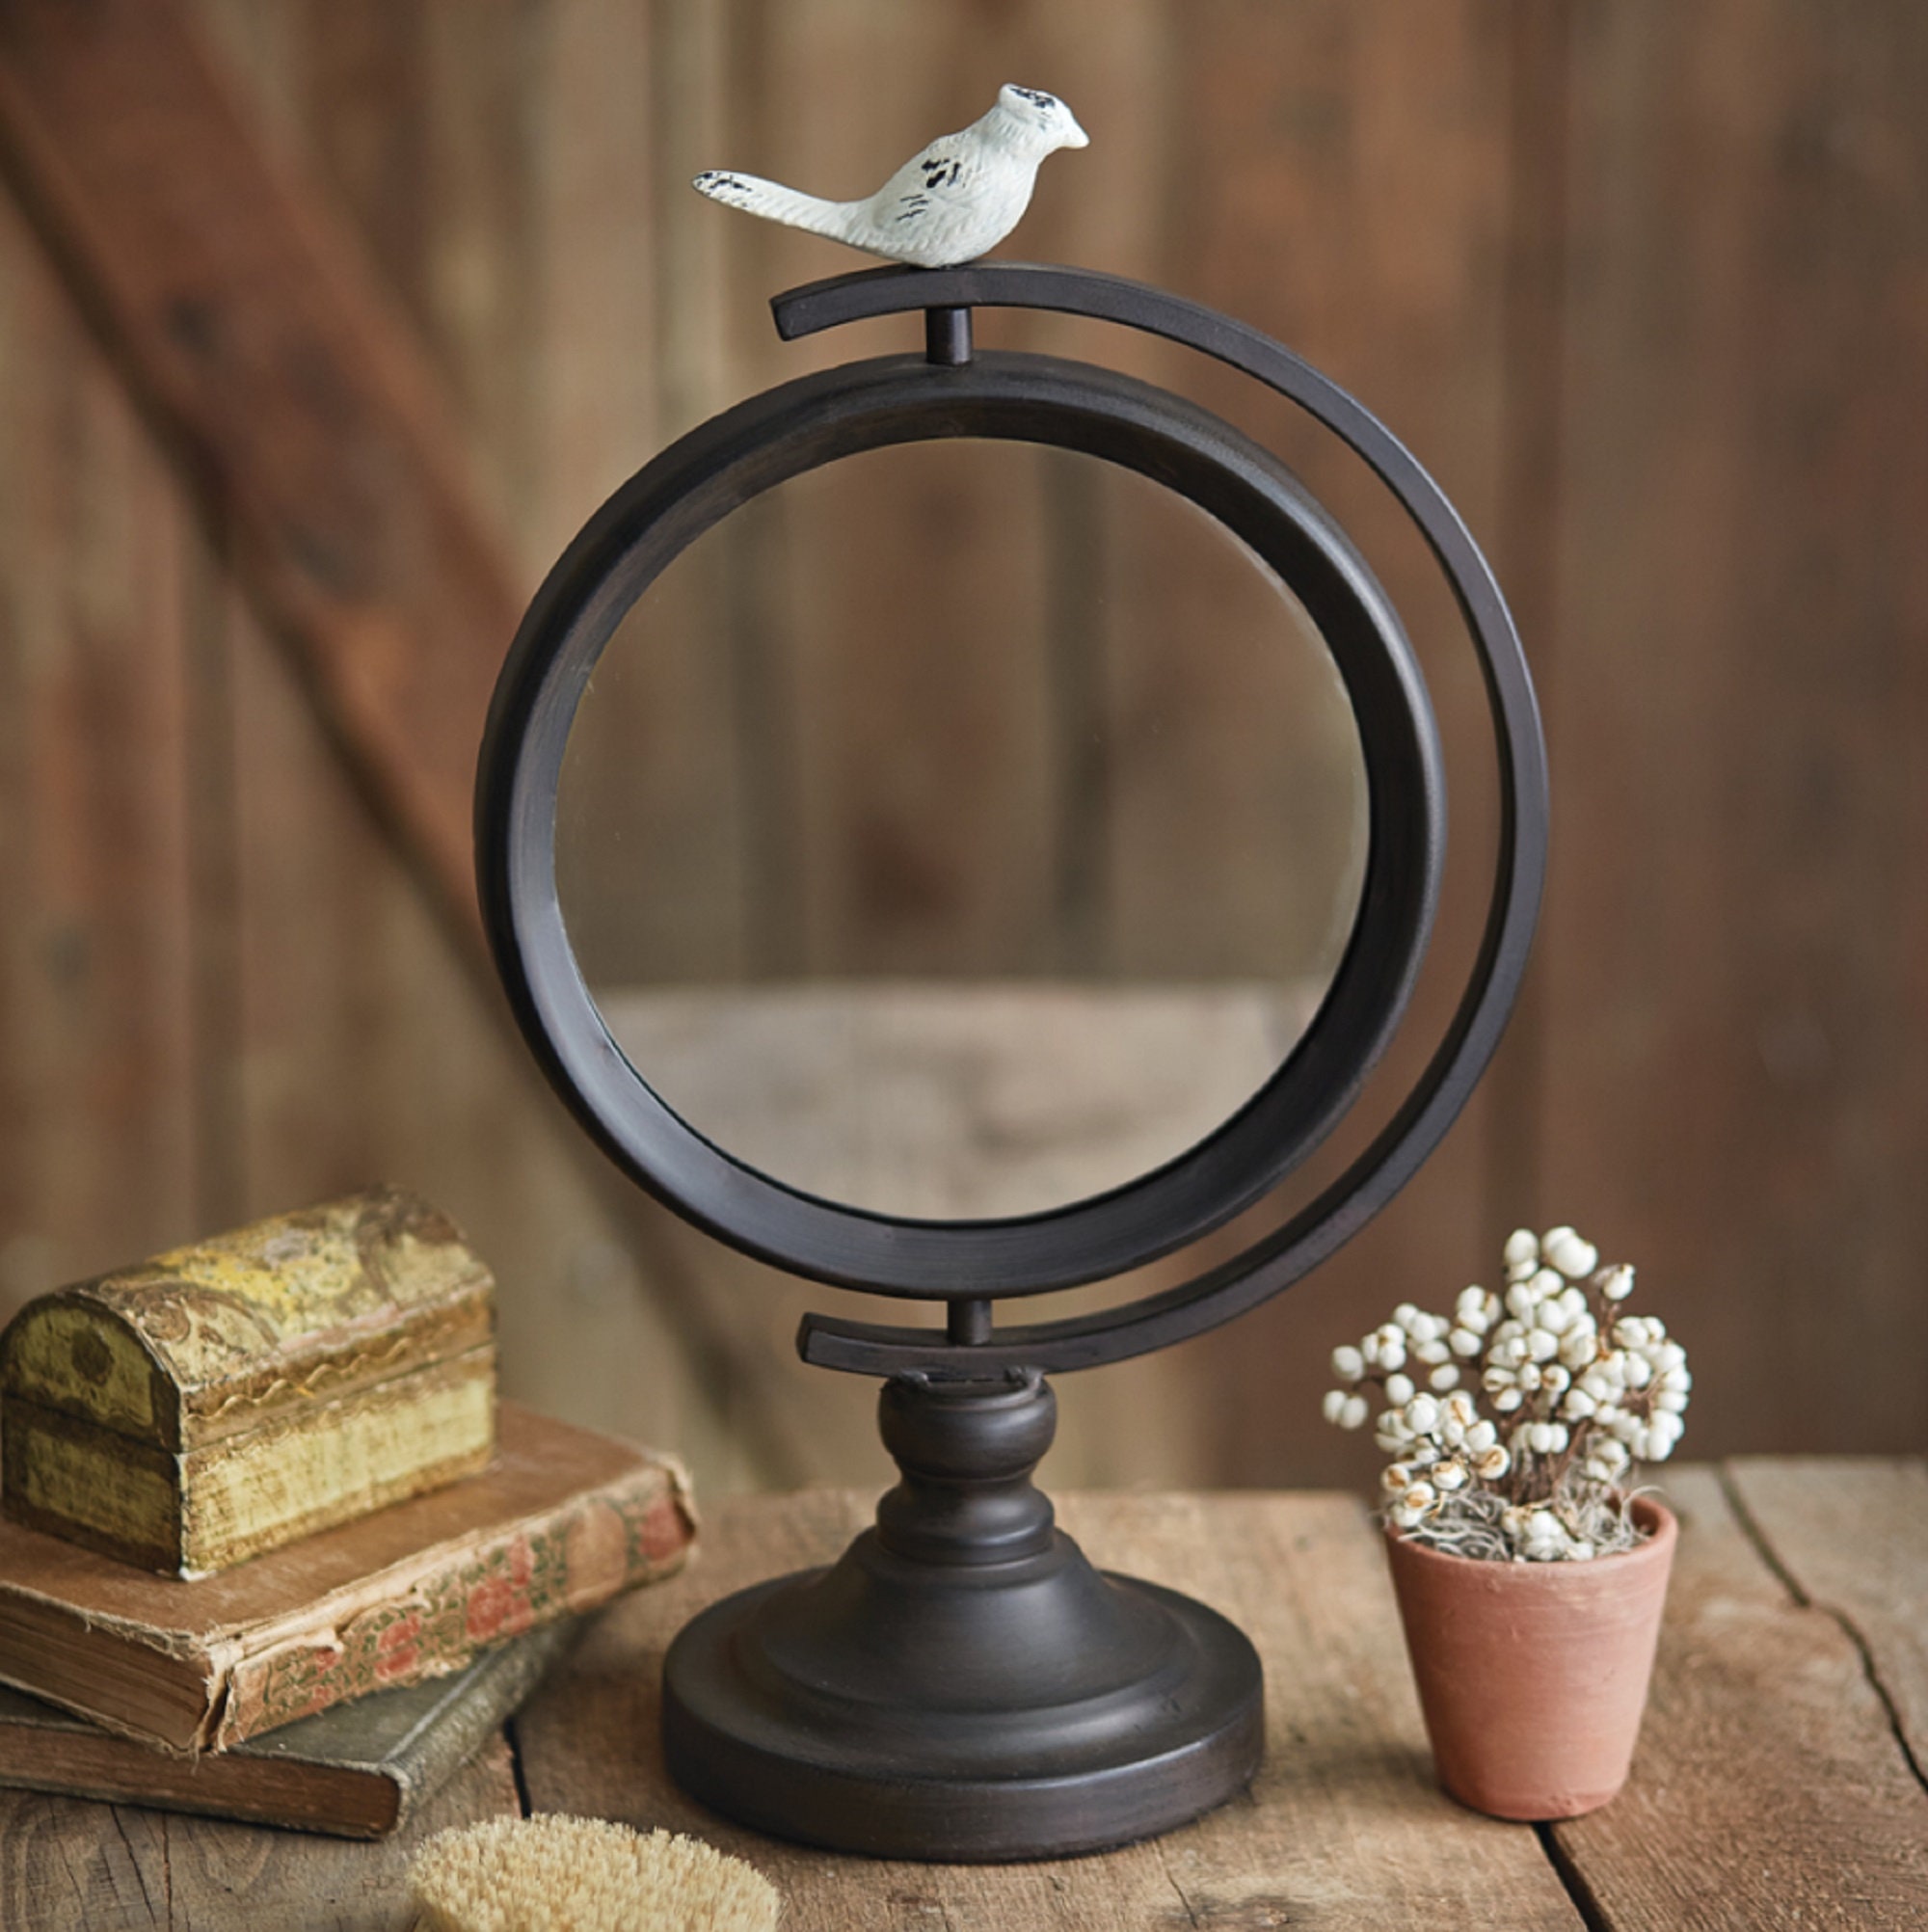 Shabby Chic White Ornate Bird Round Free-Standing Countertop Table Vanity Mirror 